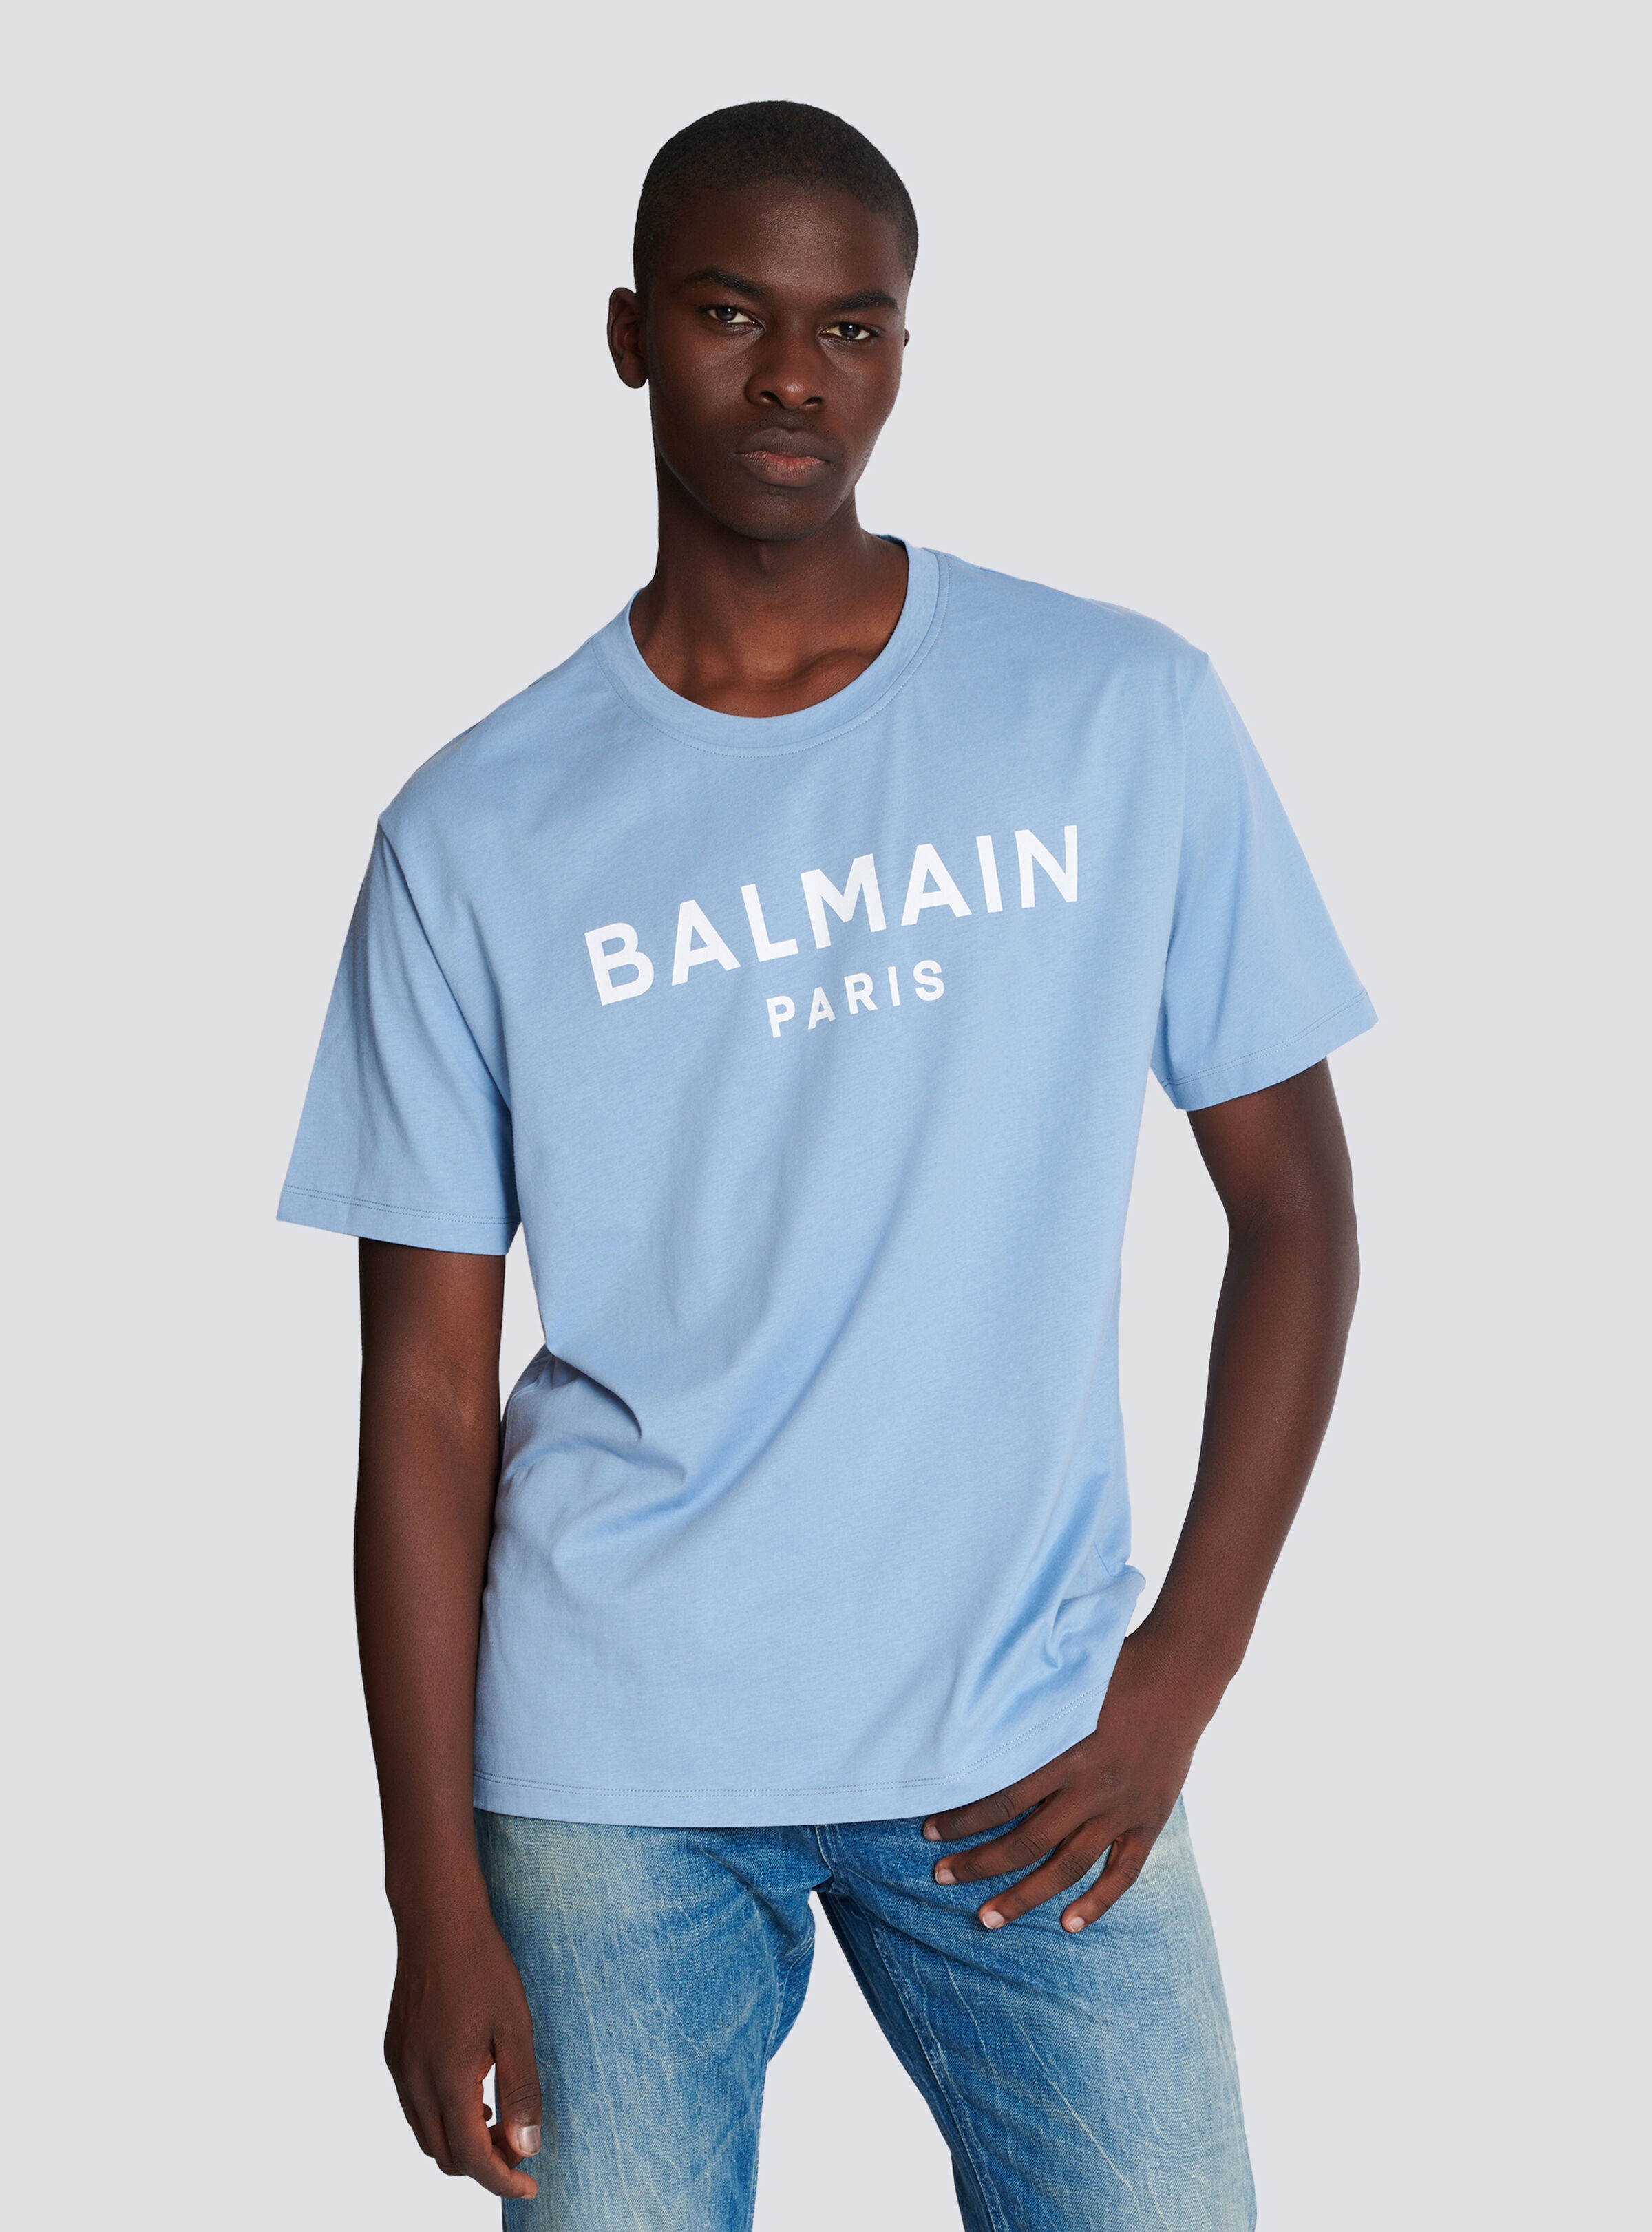 Balmain Paris T-shirt - 6